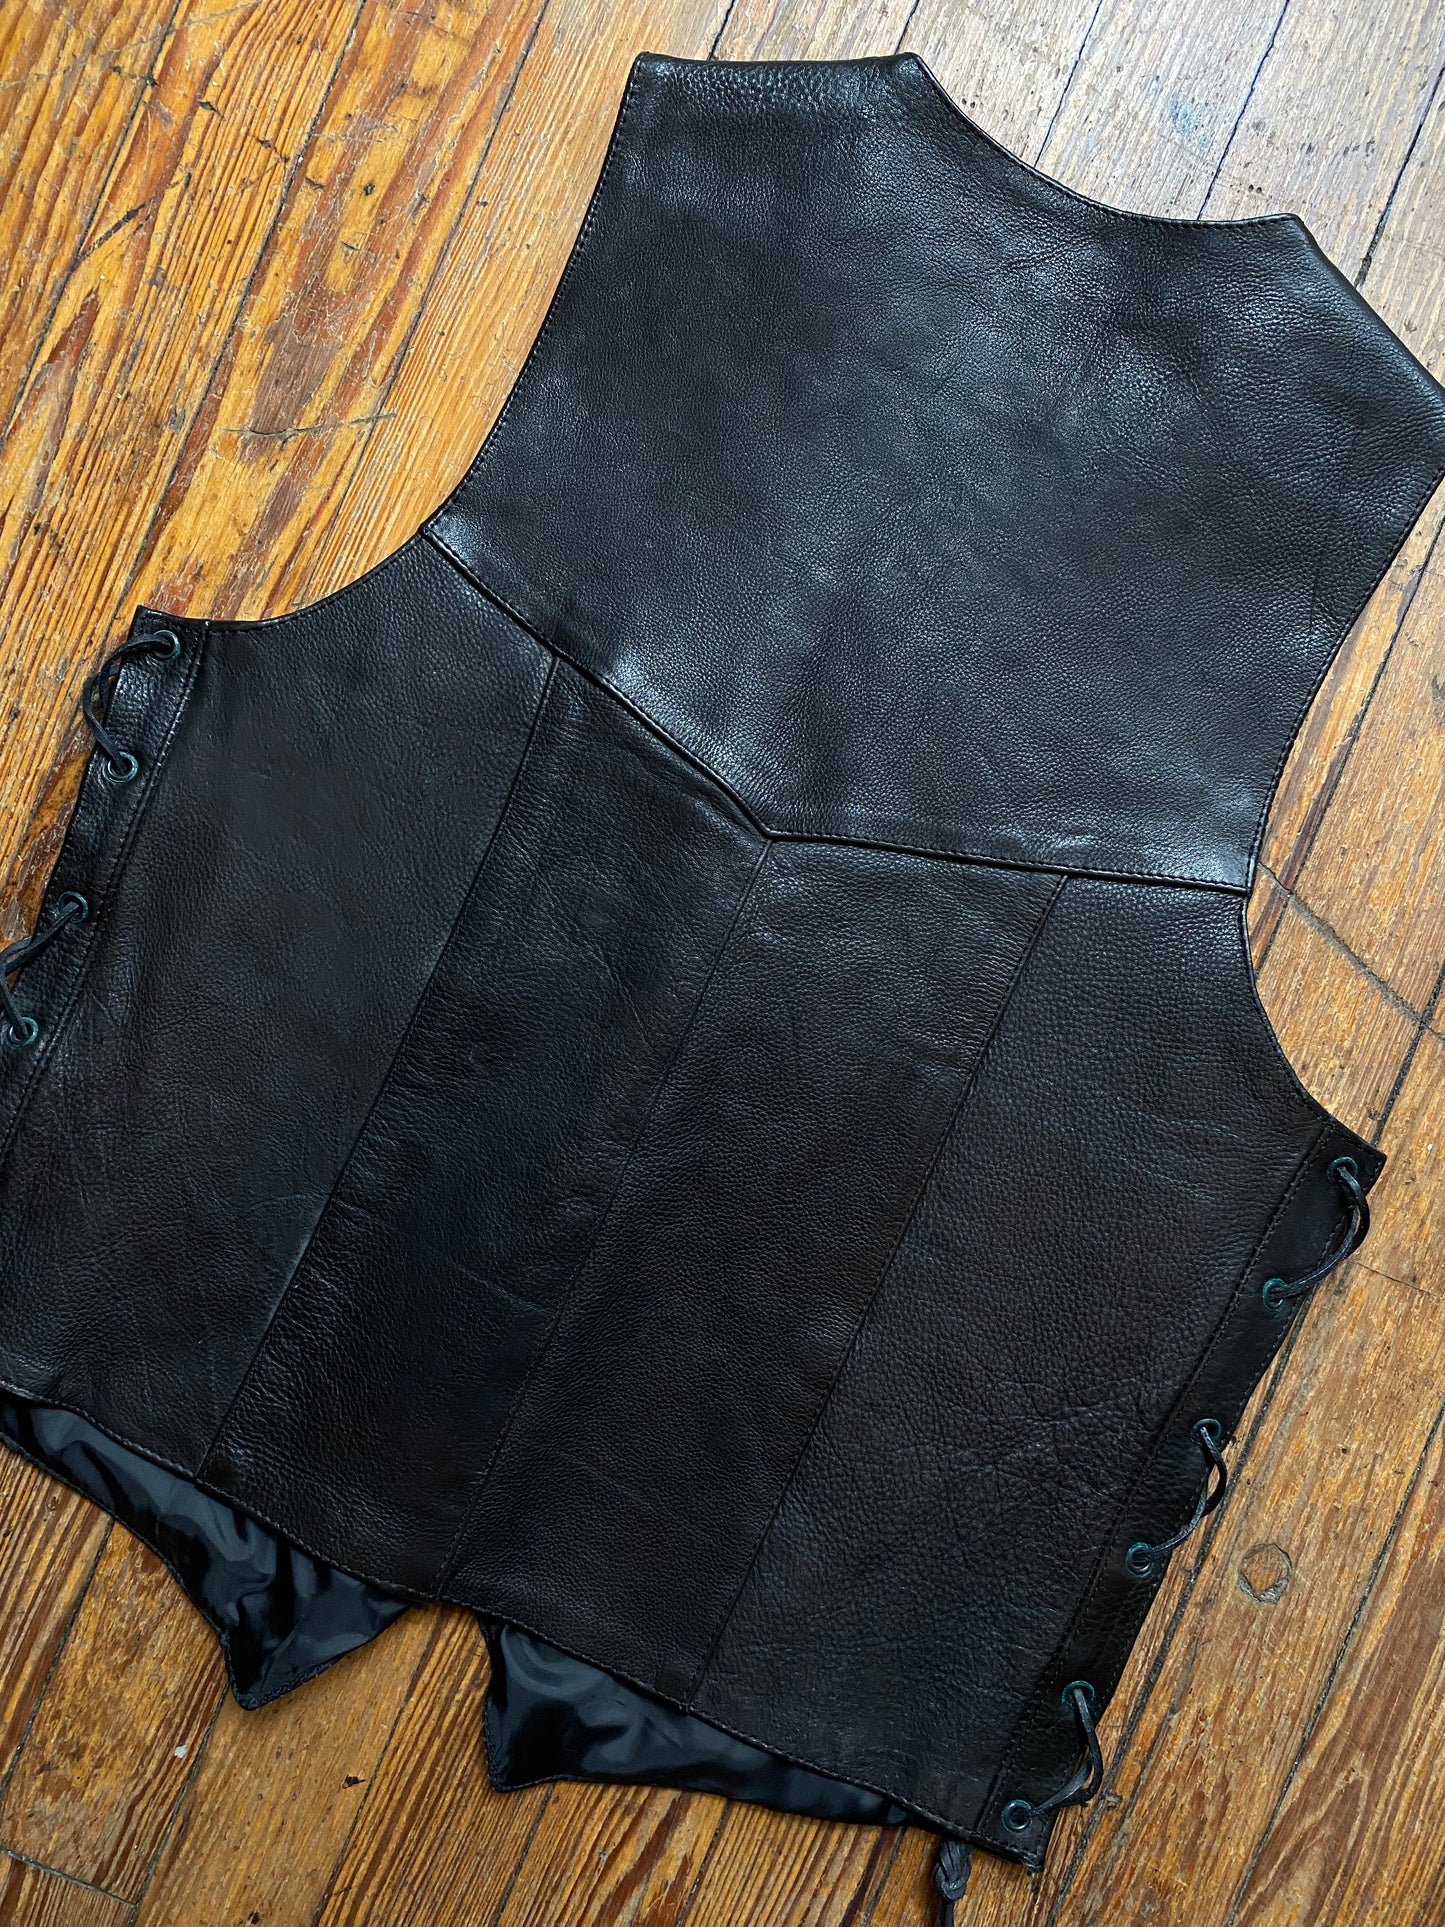 Vintage Allstate Leather Lace Up Vest